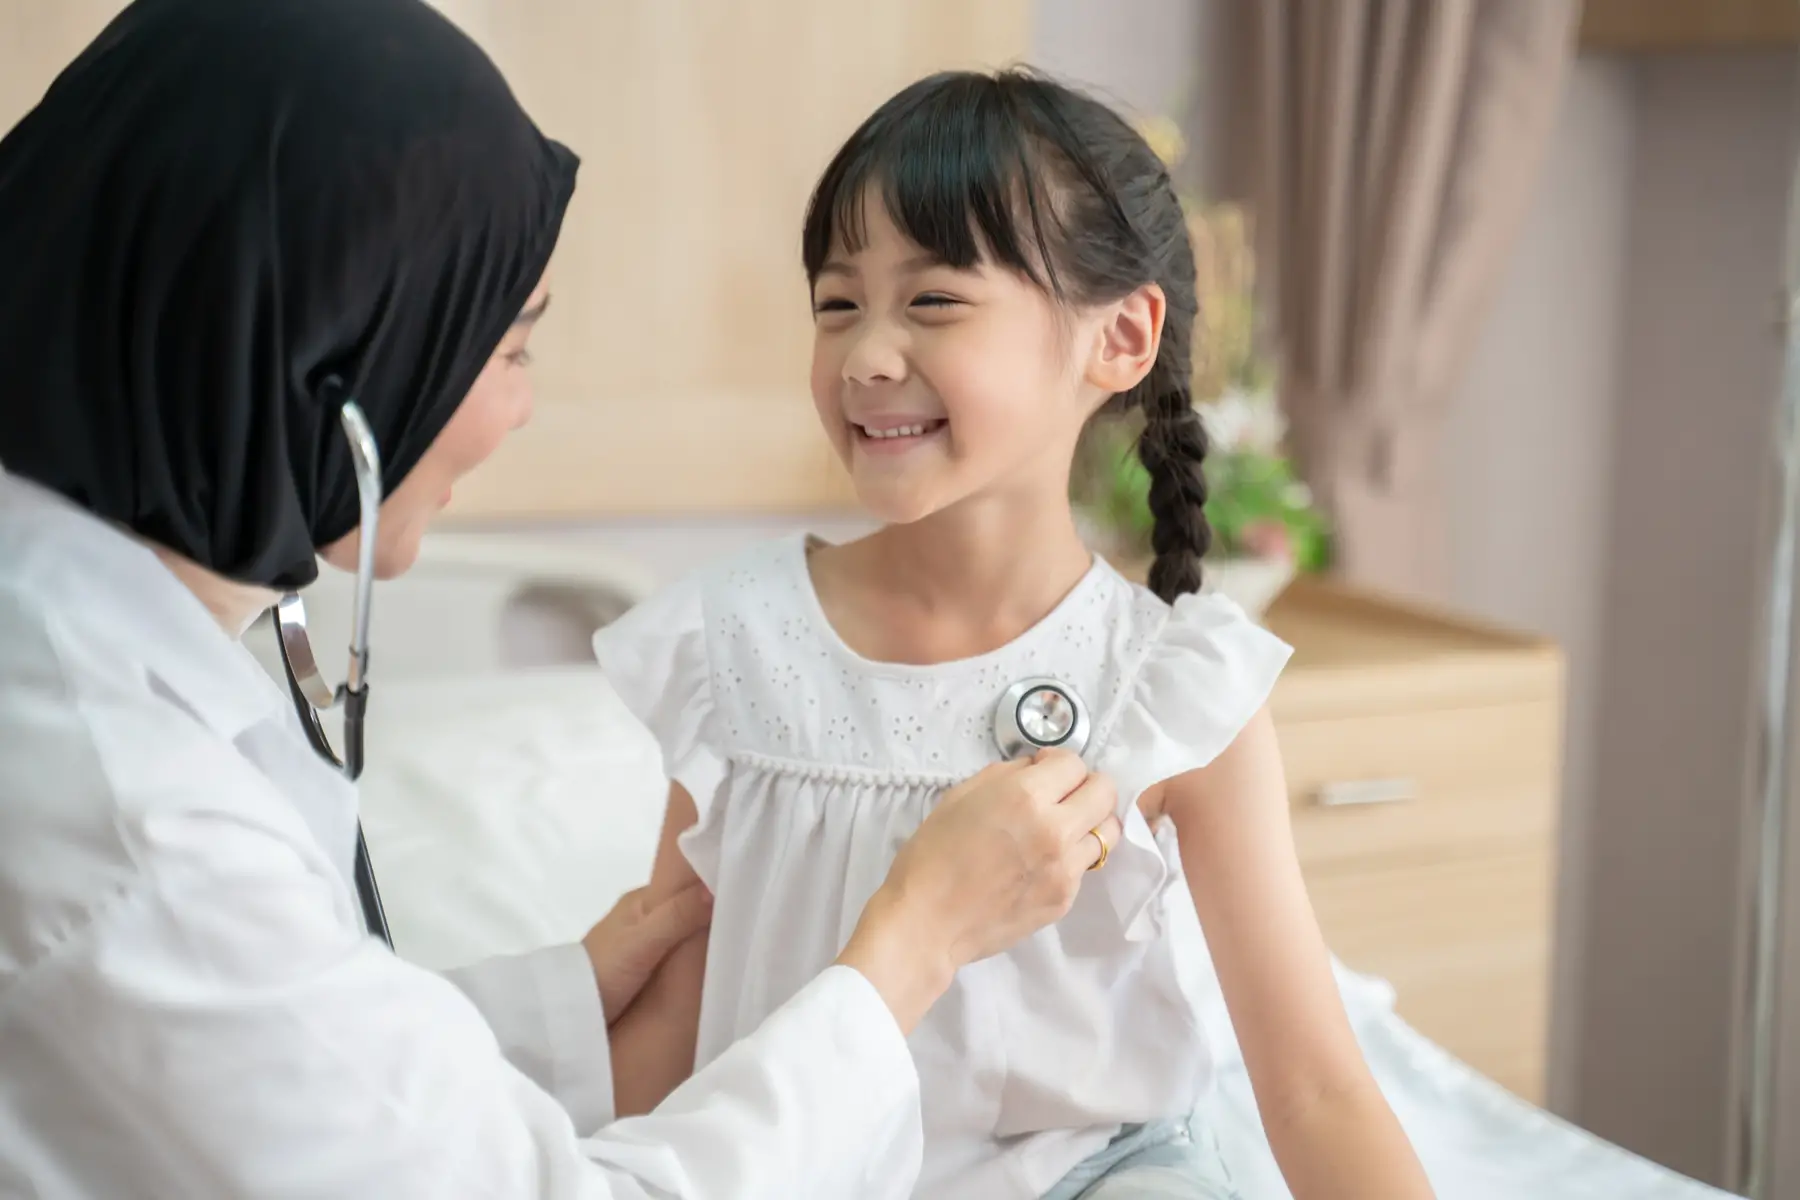 children's doctor Qatar